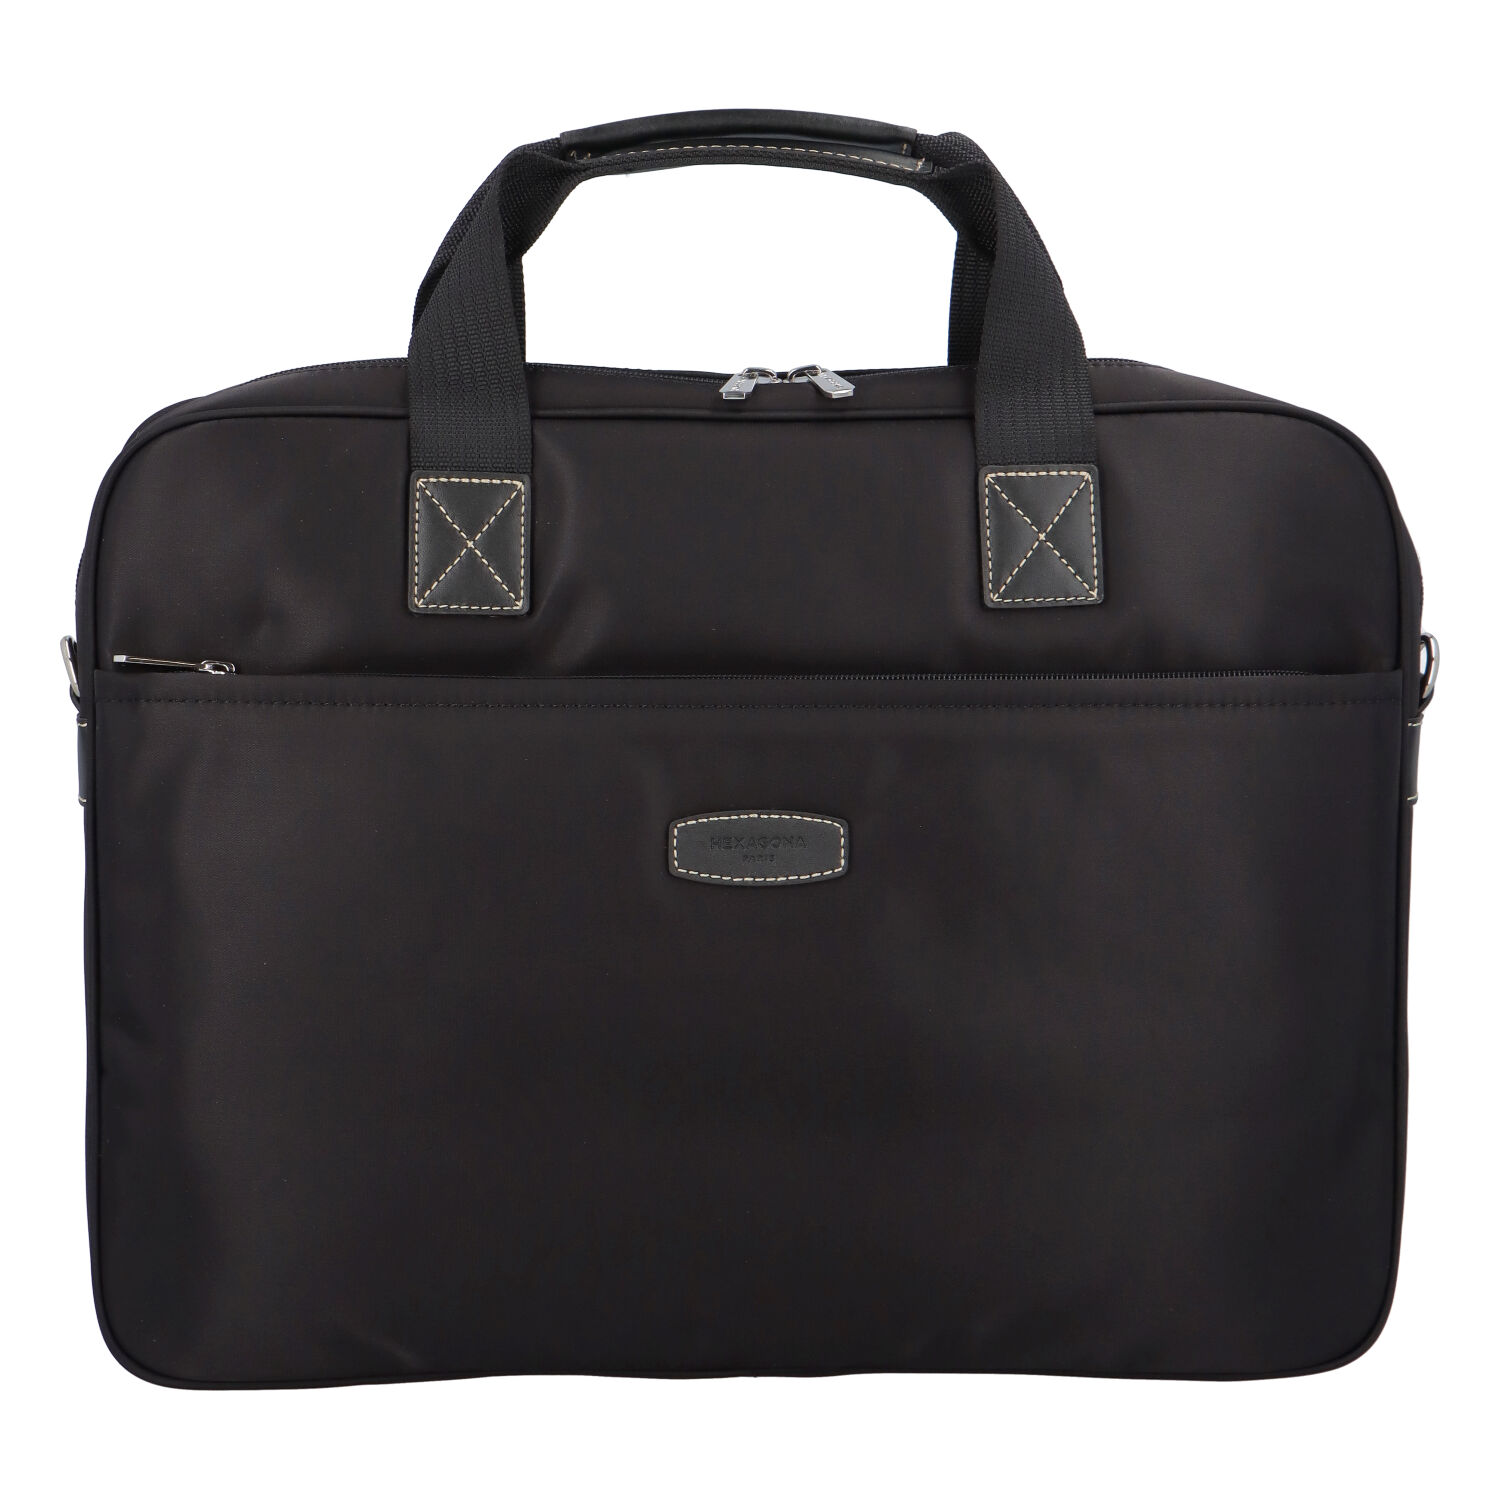 Luxusní taška na notebook černá - Hexagona 171176 A